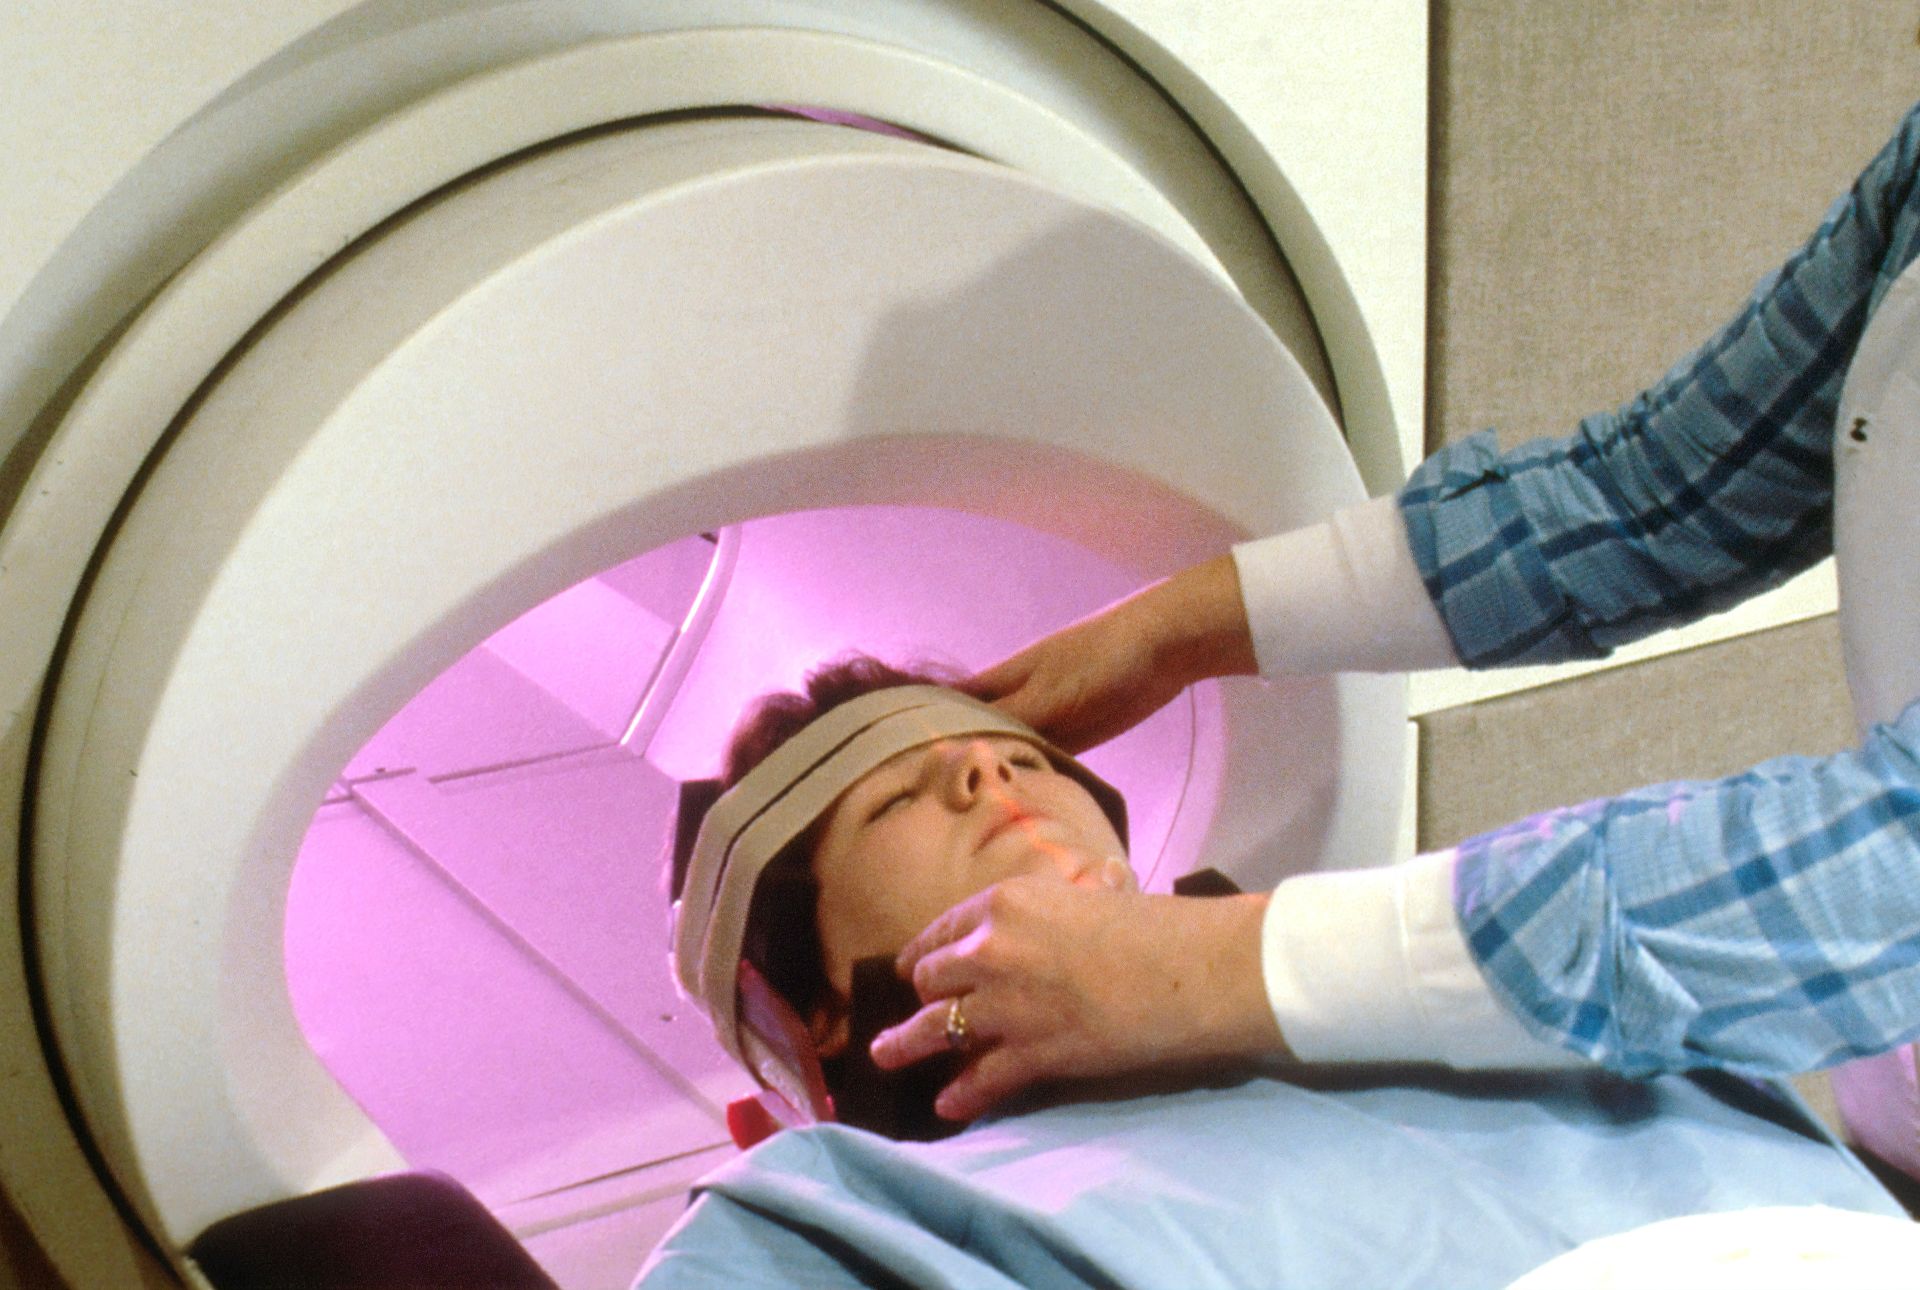 Cele mai frecvente tipuri de cancer pentru care pacienții solicită CT și RMN